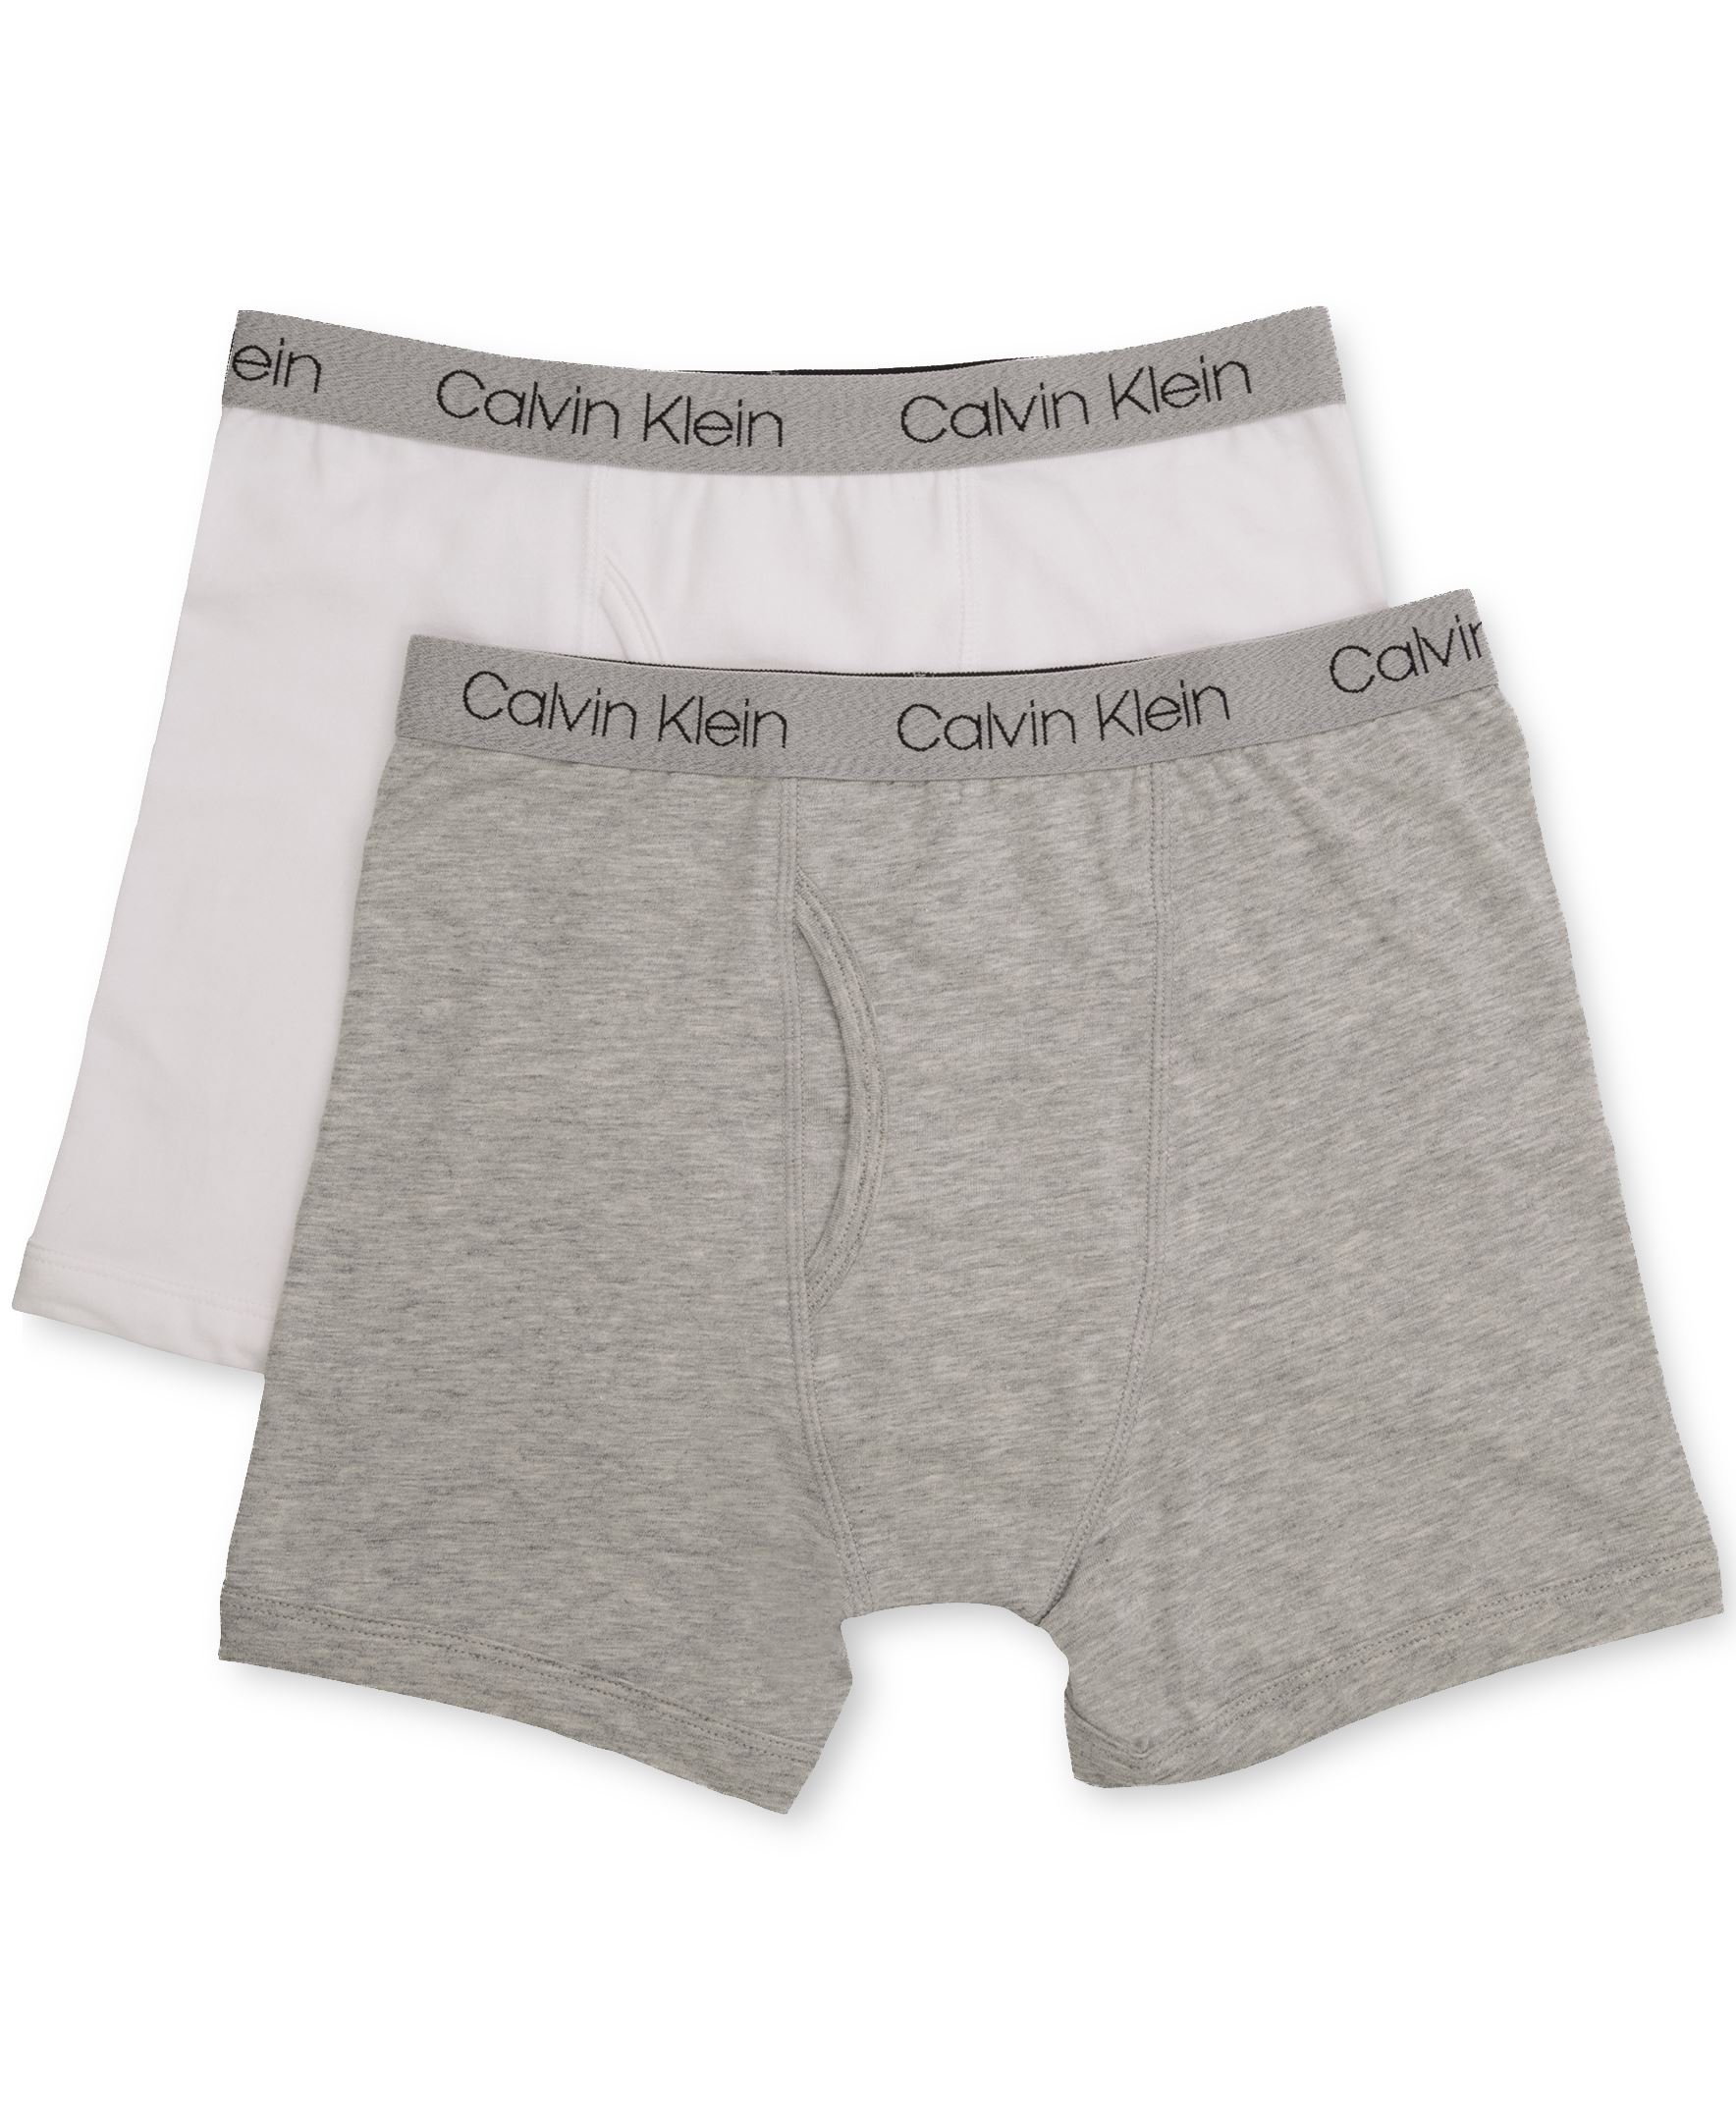 Calvin Klein Boys' Modern Cotton Assorted Boxer Briefs Underwear, Pack of 2